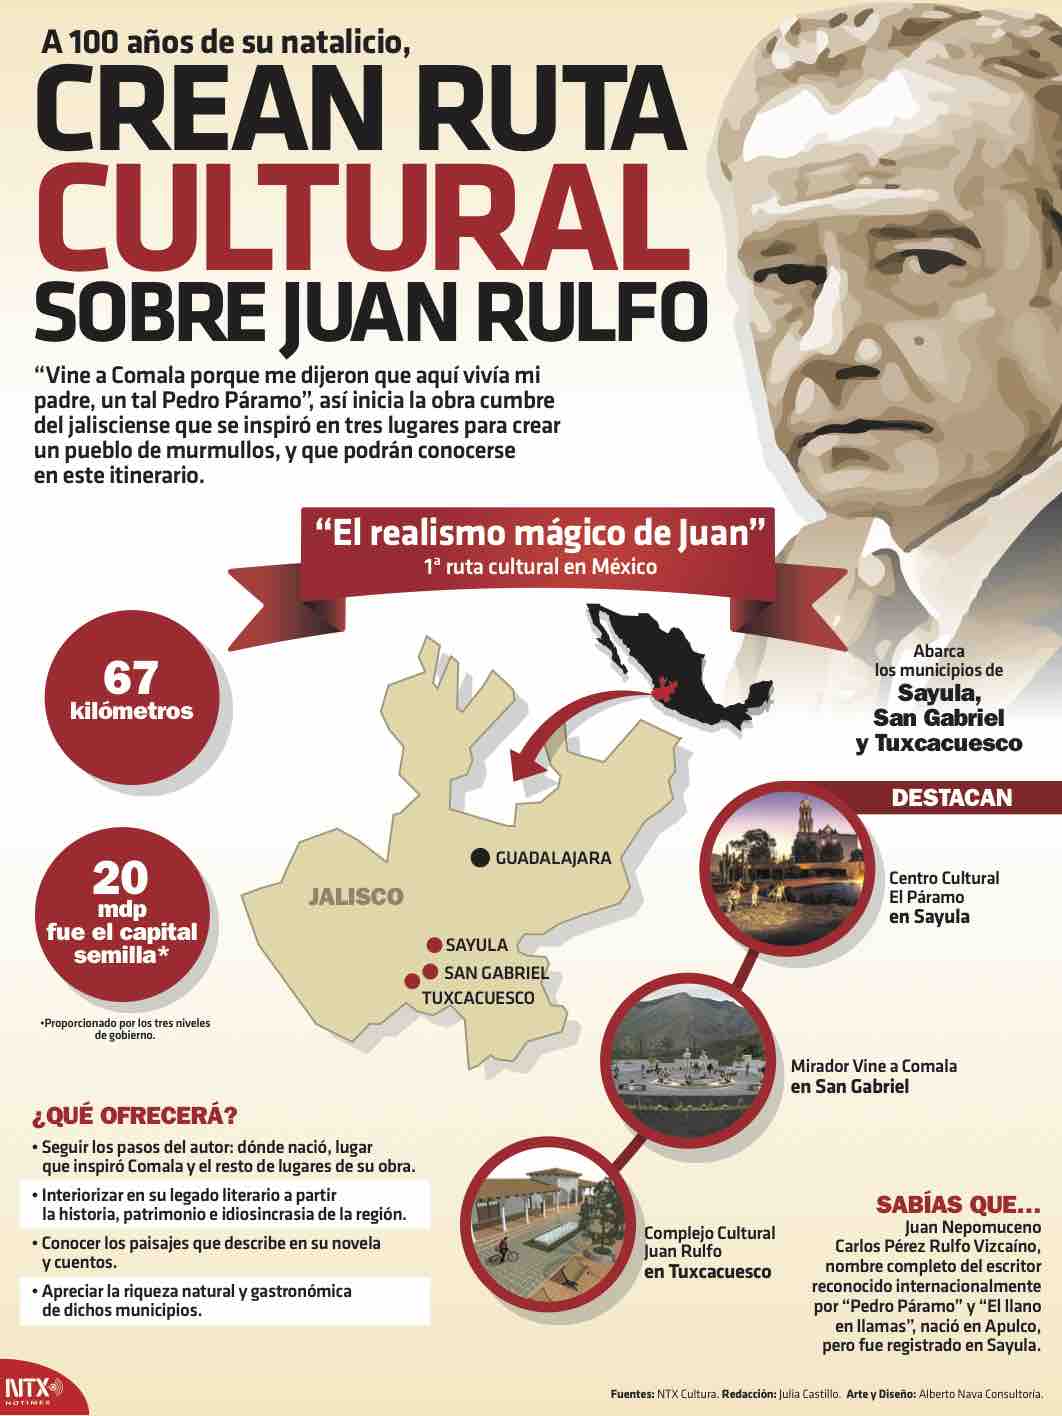 A 100 años de su natalicio, crean ruta cultural sobre Juan Rulfo